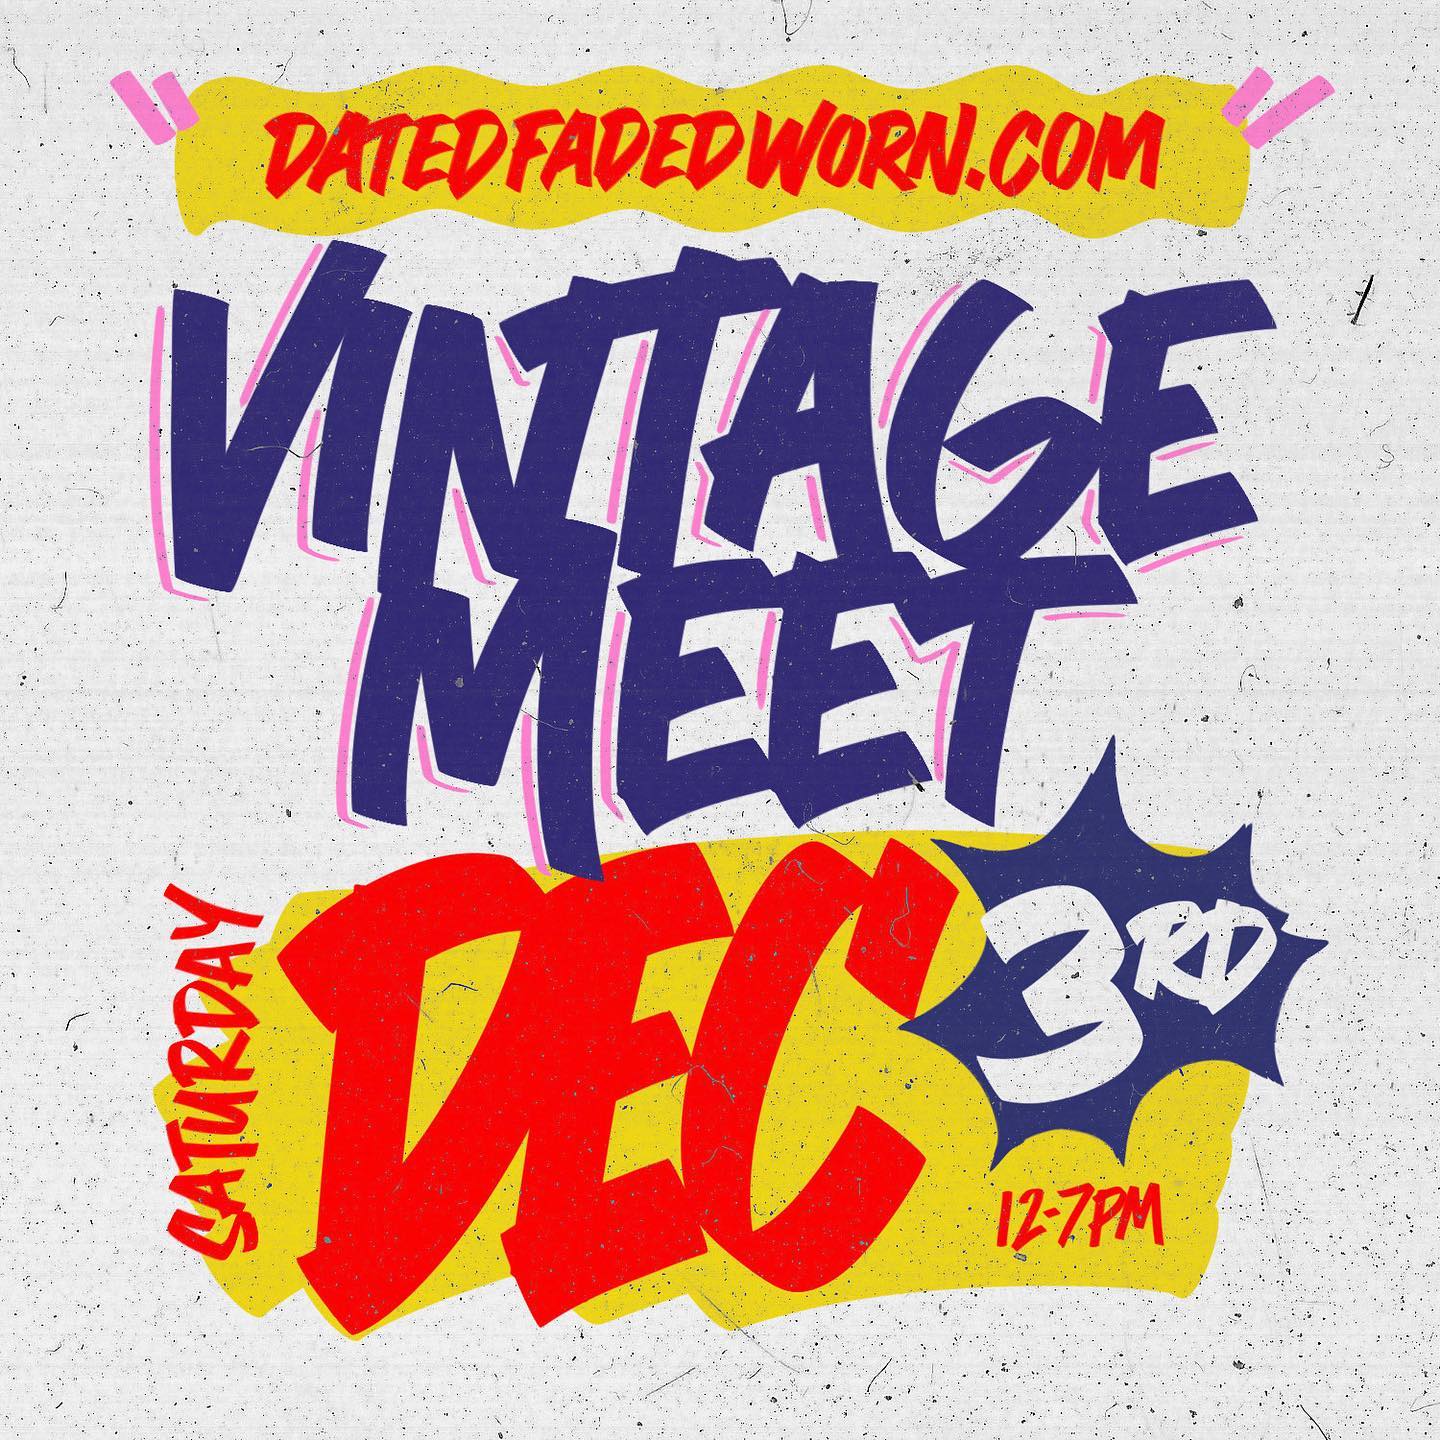 Vintage Meet December 3rd 2022